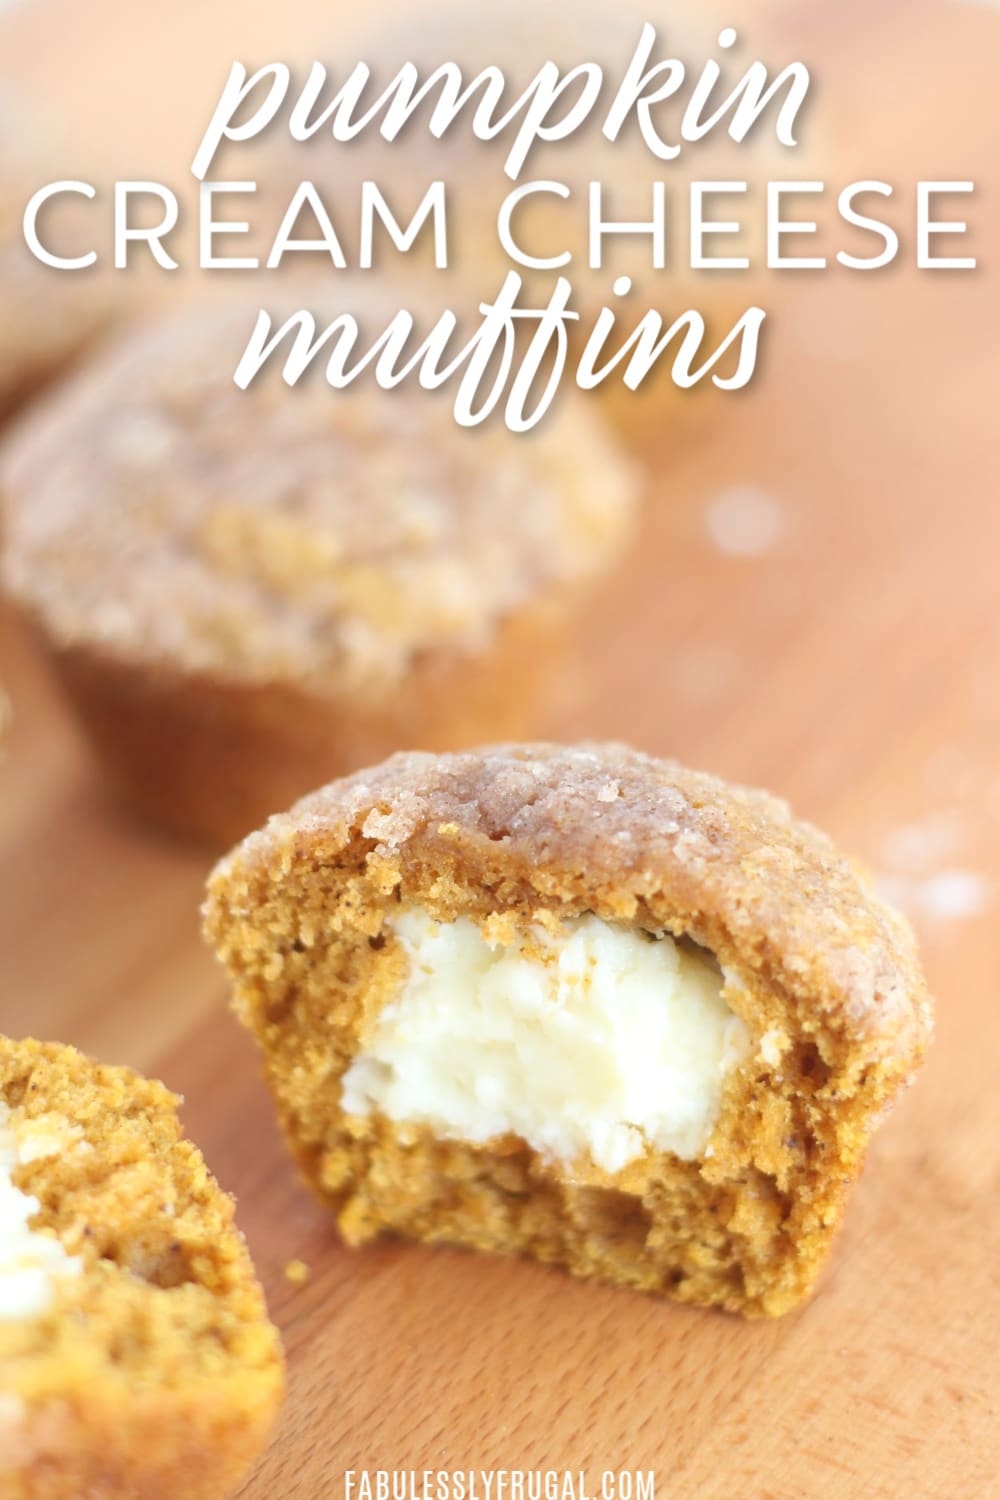 Pumpkin cream cheese muffin recipe